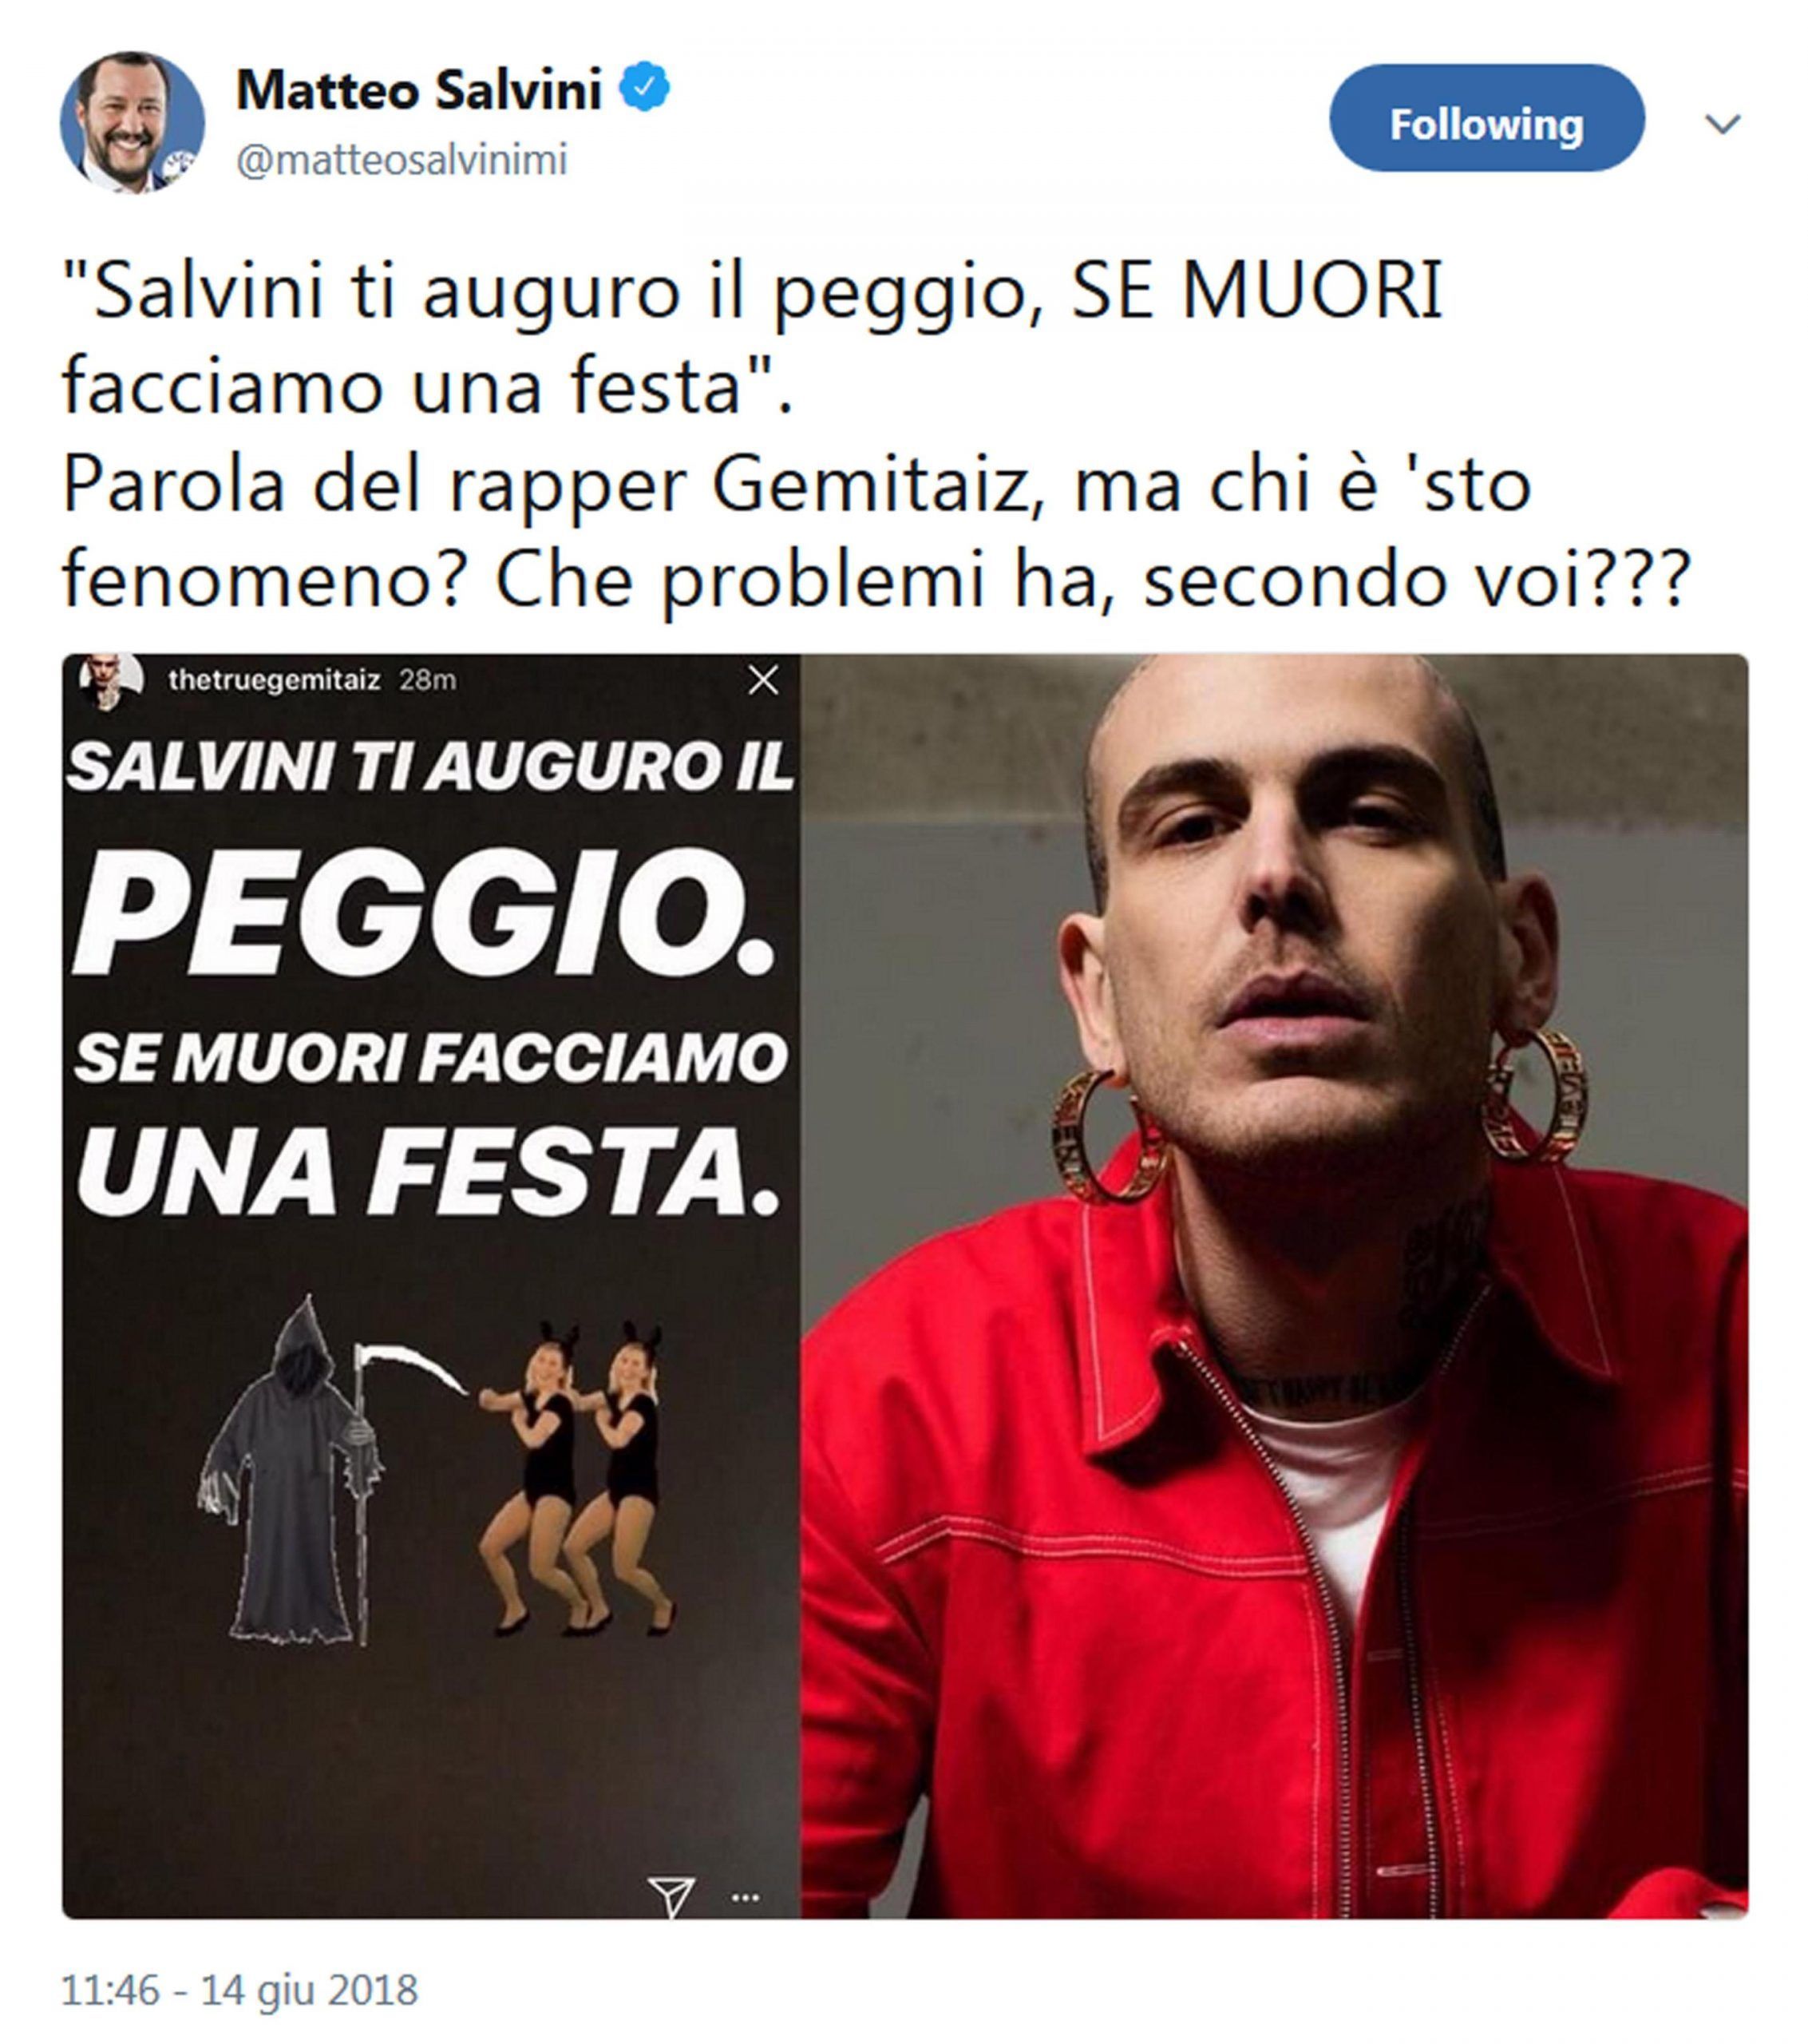 Salvini,rapper Gemitaiz si augura che muoia,che problemi ha?